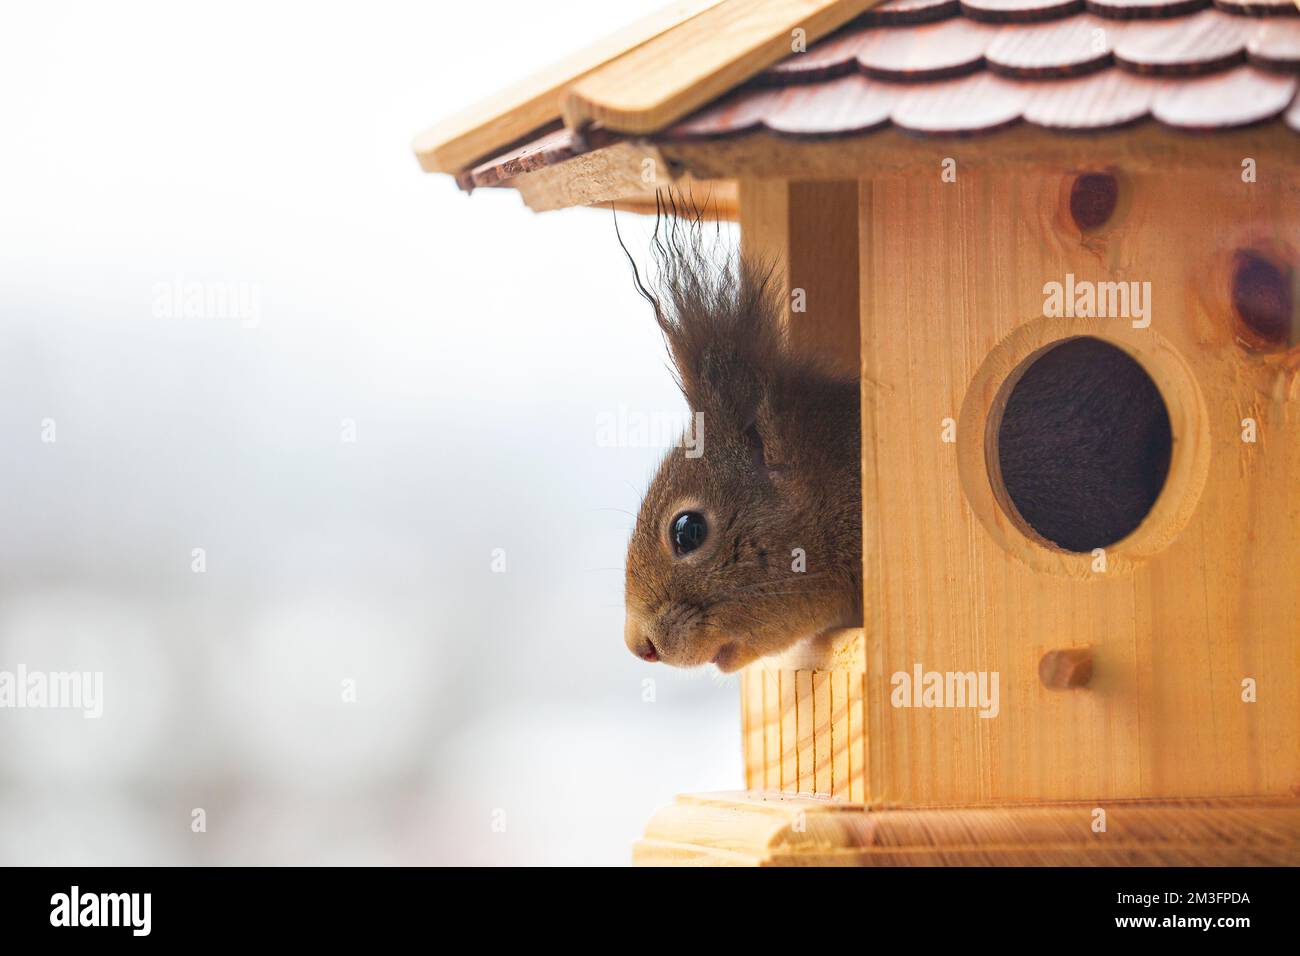 DEUTSCHE WILDTIERE: Rotes Eichhörnchen (Sciurus vulgaris), das aus einem hölzernen Vogelhaus schaut Stockfoto